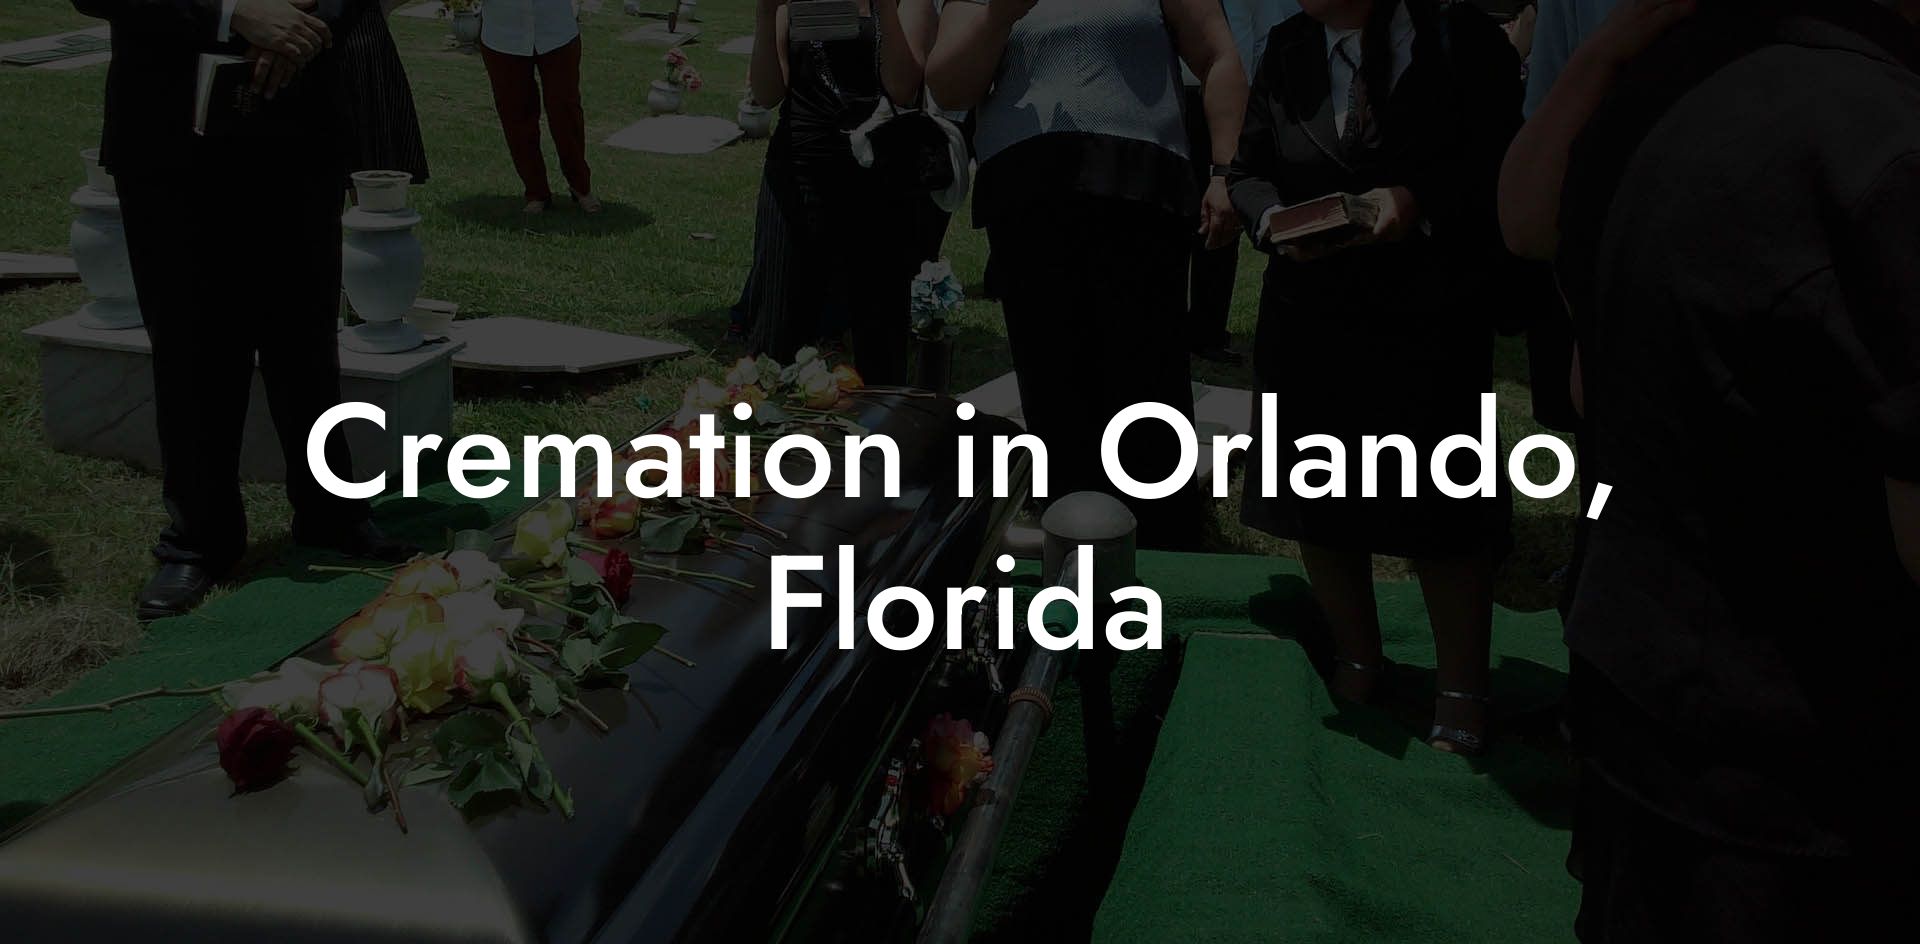 Cremation in Orlando, Florida